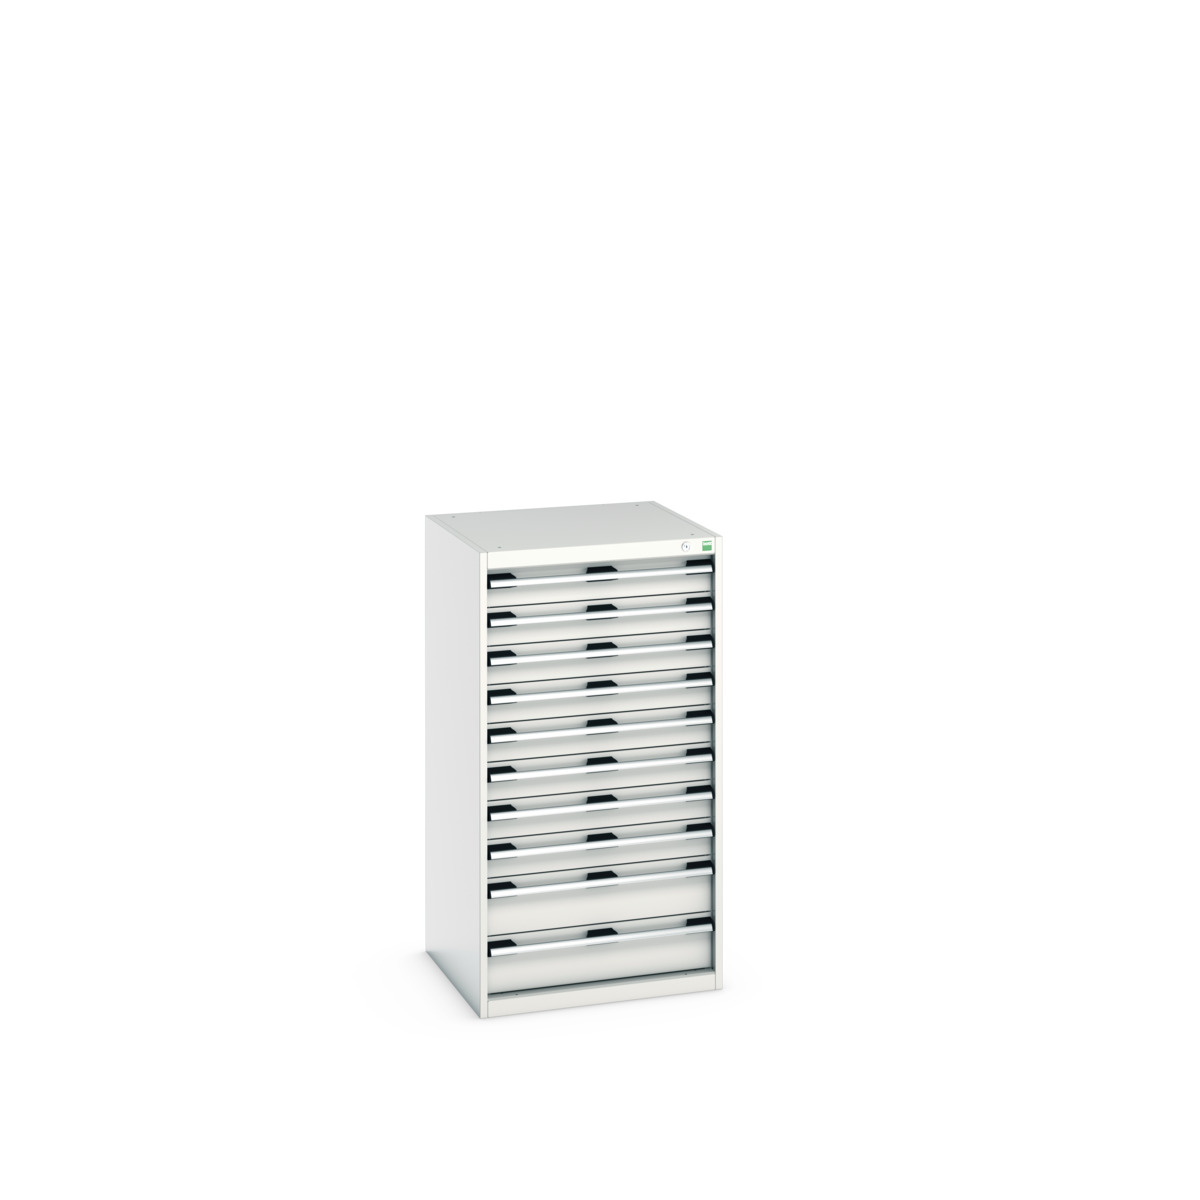 40019075.16V - cubio drawer cabinet